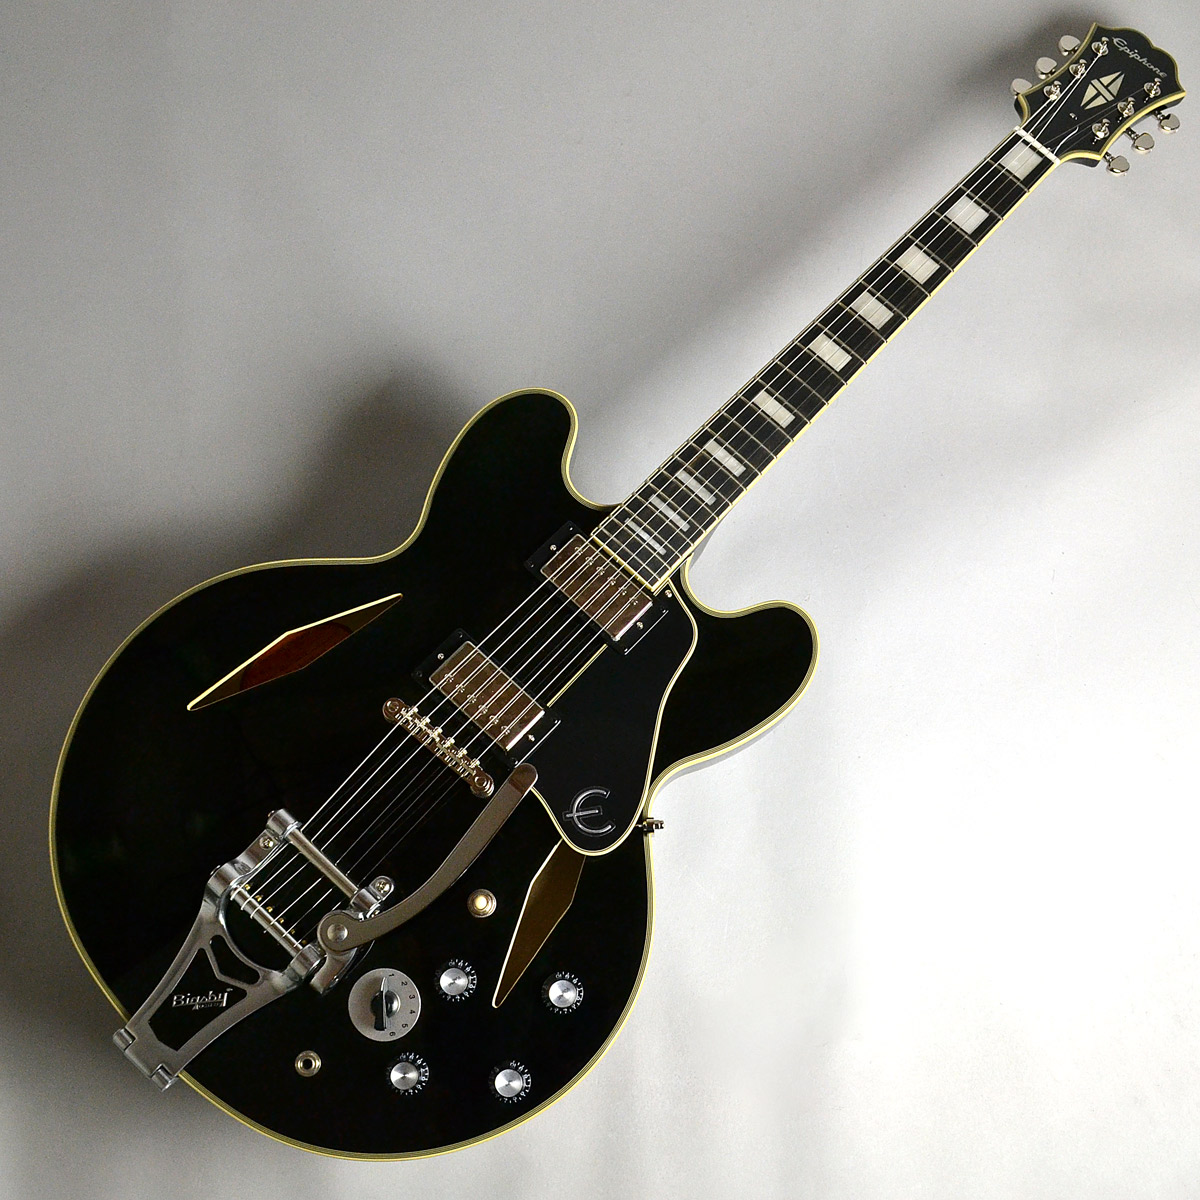 **Limited Edition Shinichi Ubukata ES-355 生形真一氏の長きにわたるメインギターである”Gibson ES-355 Bigsby"をベースに製作されています。 |*ブランド|*商品型名|*販売価格]](税込)| |Epiphone|Limited Editio […]